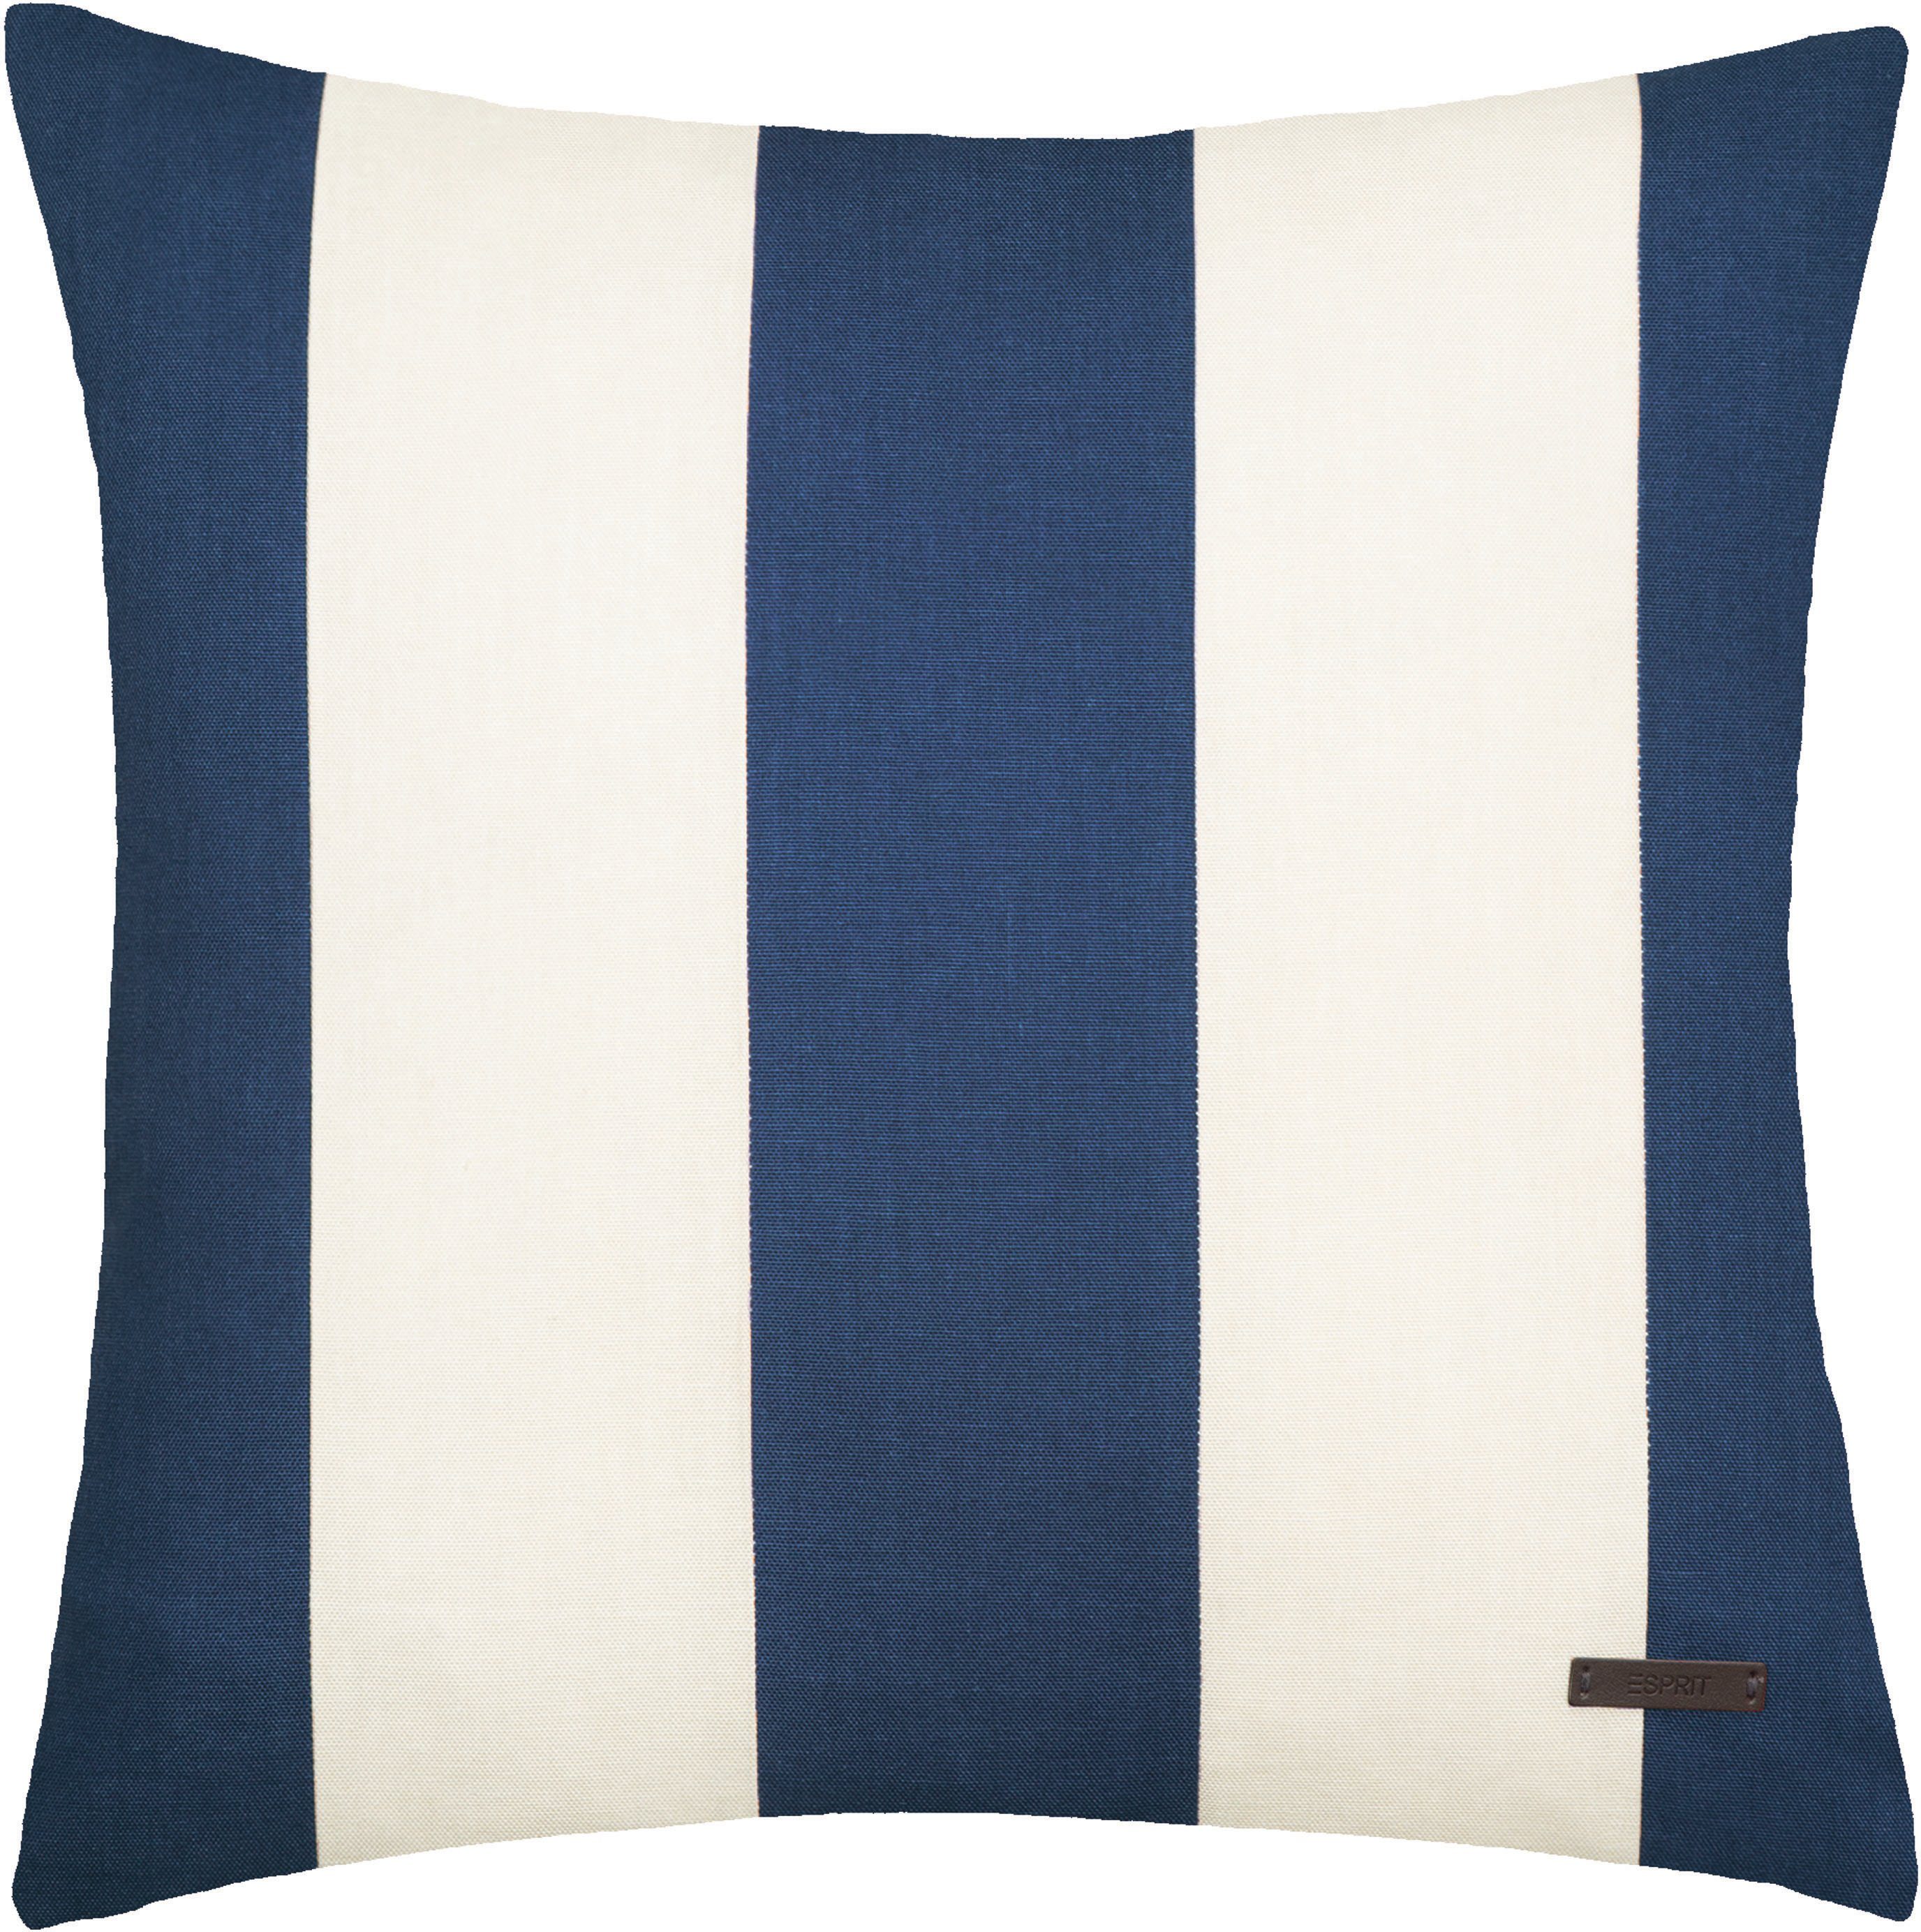 Esprit Dekokissen Neo Stripe, mit Streifen, Kissenhülle ohne Füllung, 1 Stück dunkelblau/navy/marine